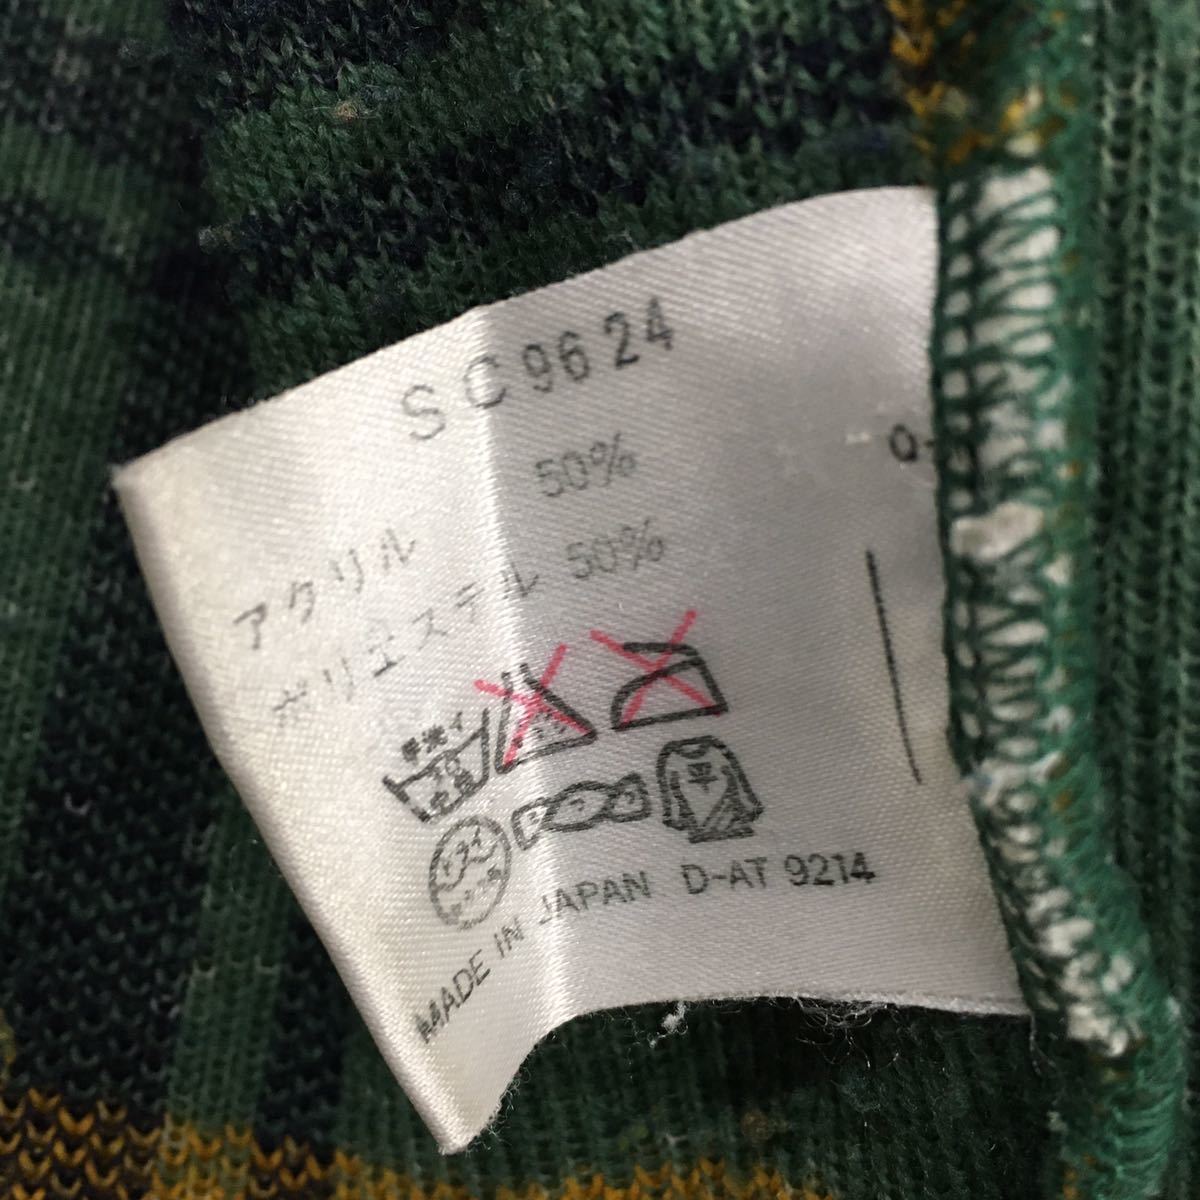 YAMAHA ヤマハ フリースジャケット ヴィンテージ ジャンパー スポーツウェア チェック 刺繍ロゴ メンズ サイズM 日本製 緑